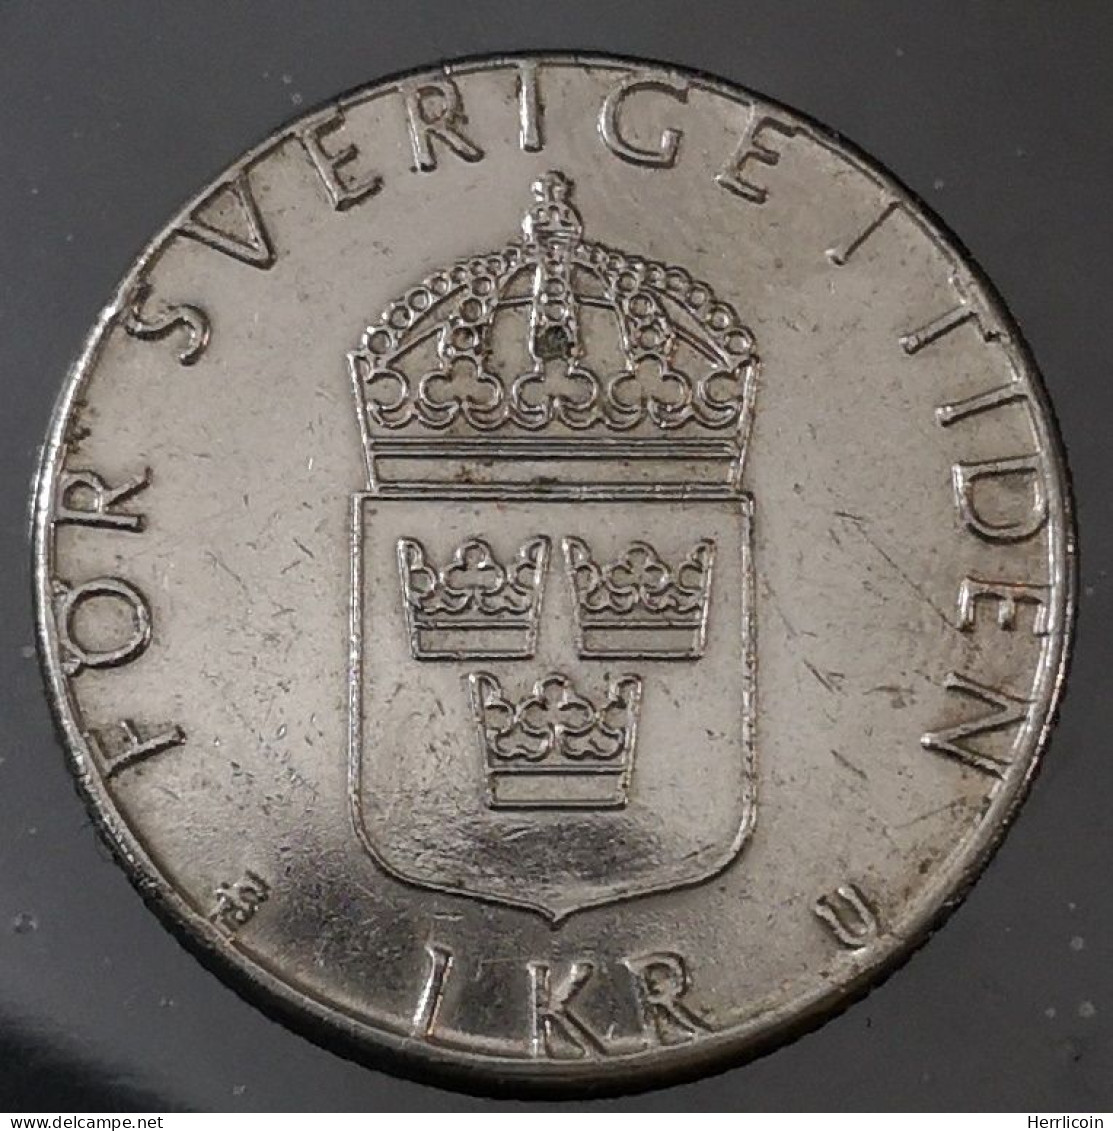 Monnaie Suède - 1978 - 1 Krona Carl XVI Gustaf - Suède